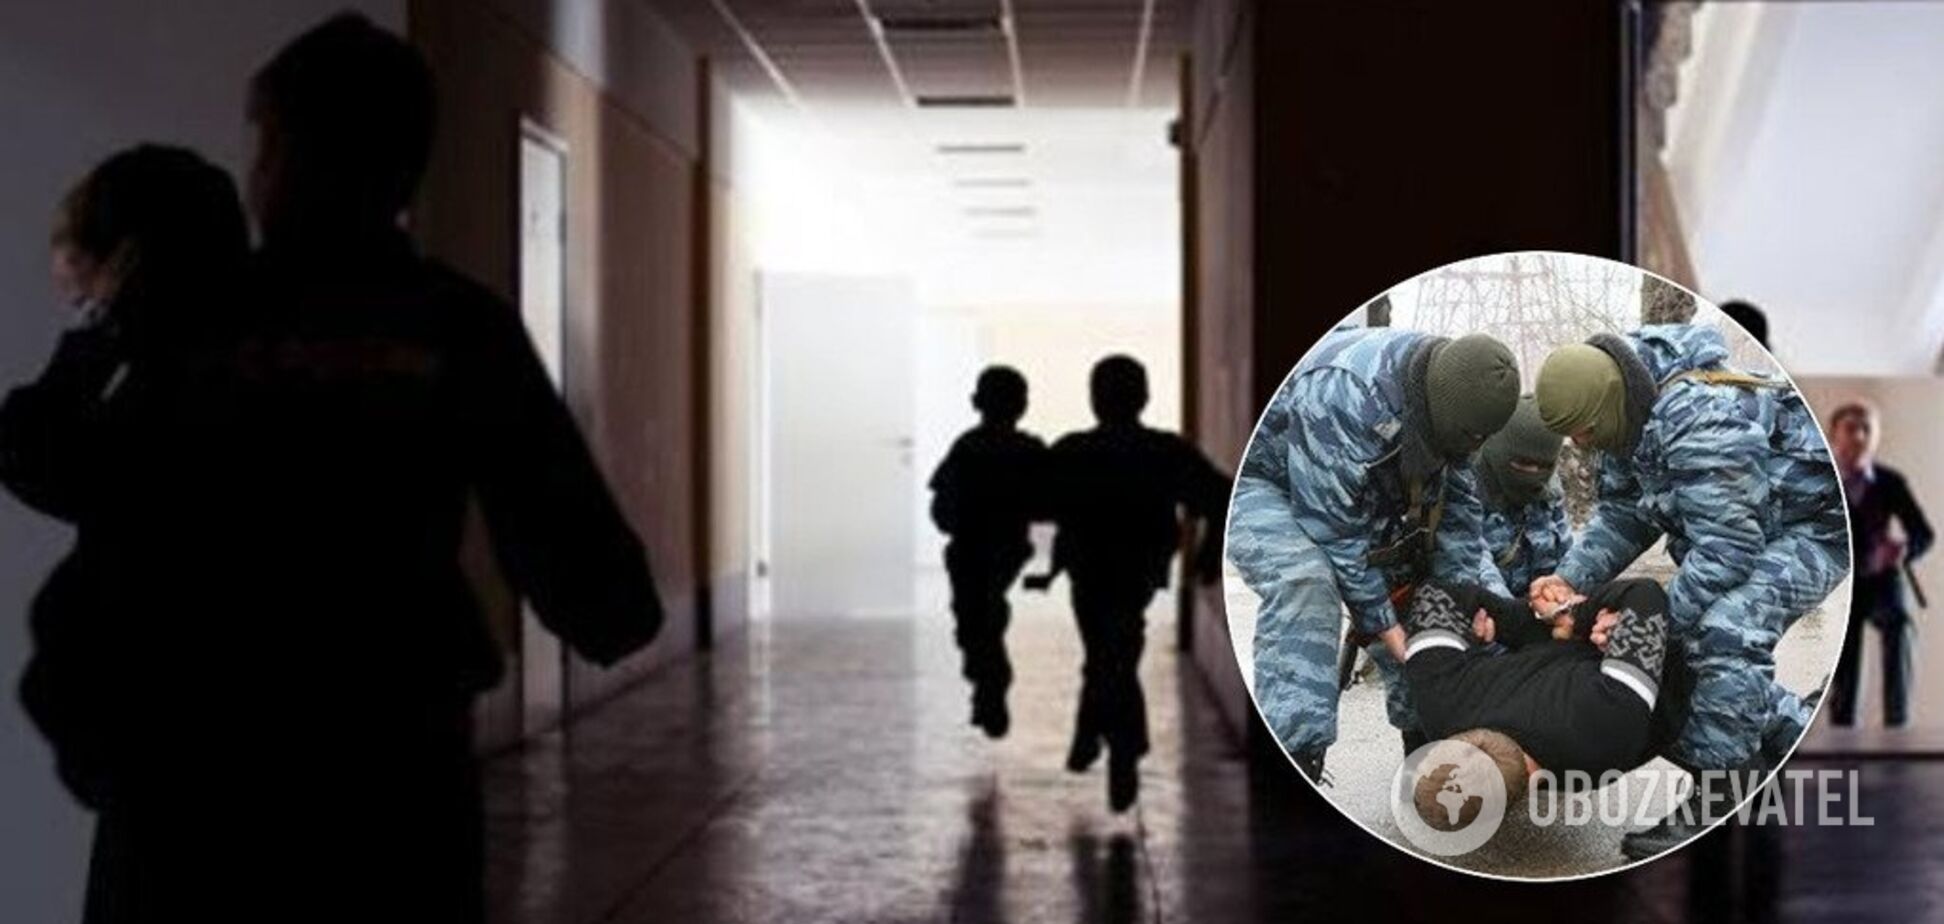 Слідами 'керченського стрільця': у Росії школярів запідозрили в підготовці теракту